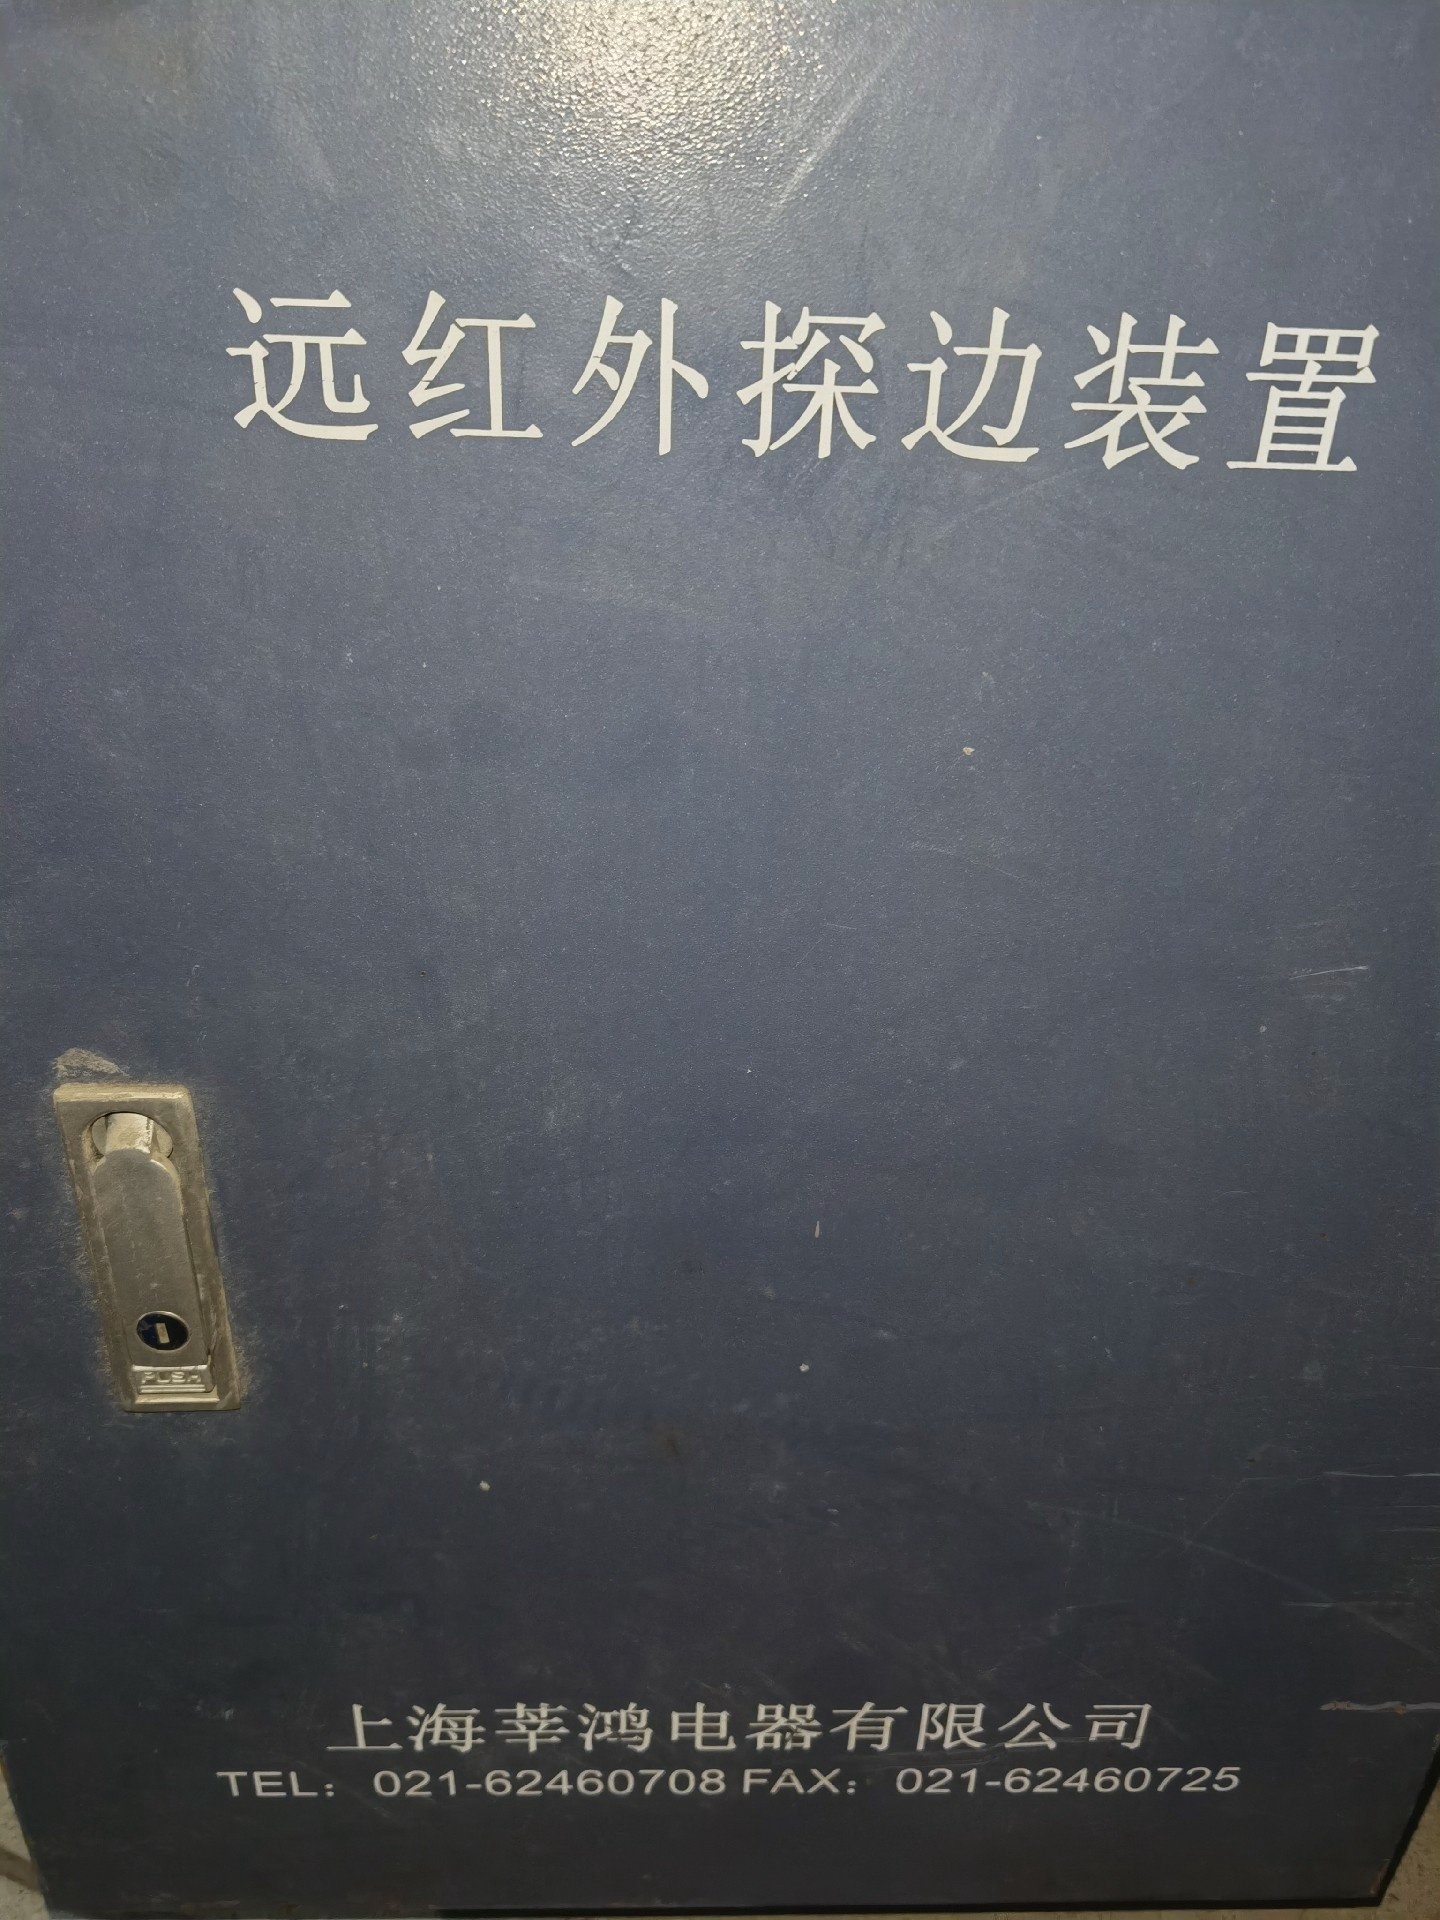 远红外探边装置上海莘鸿电器有限公司探边电箱一台询价后再拍议价